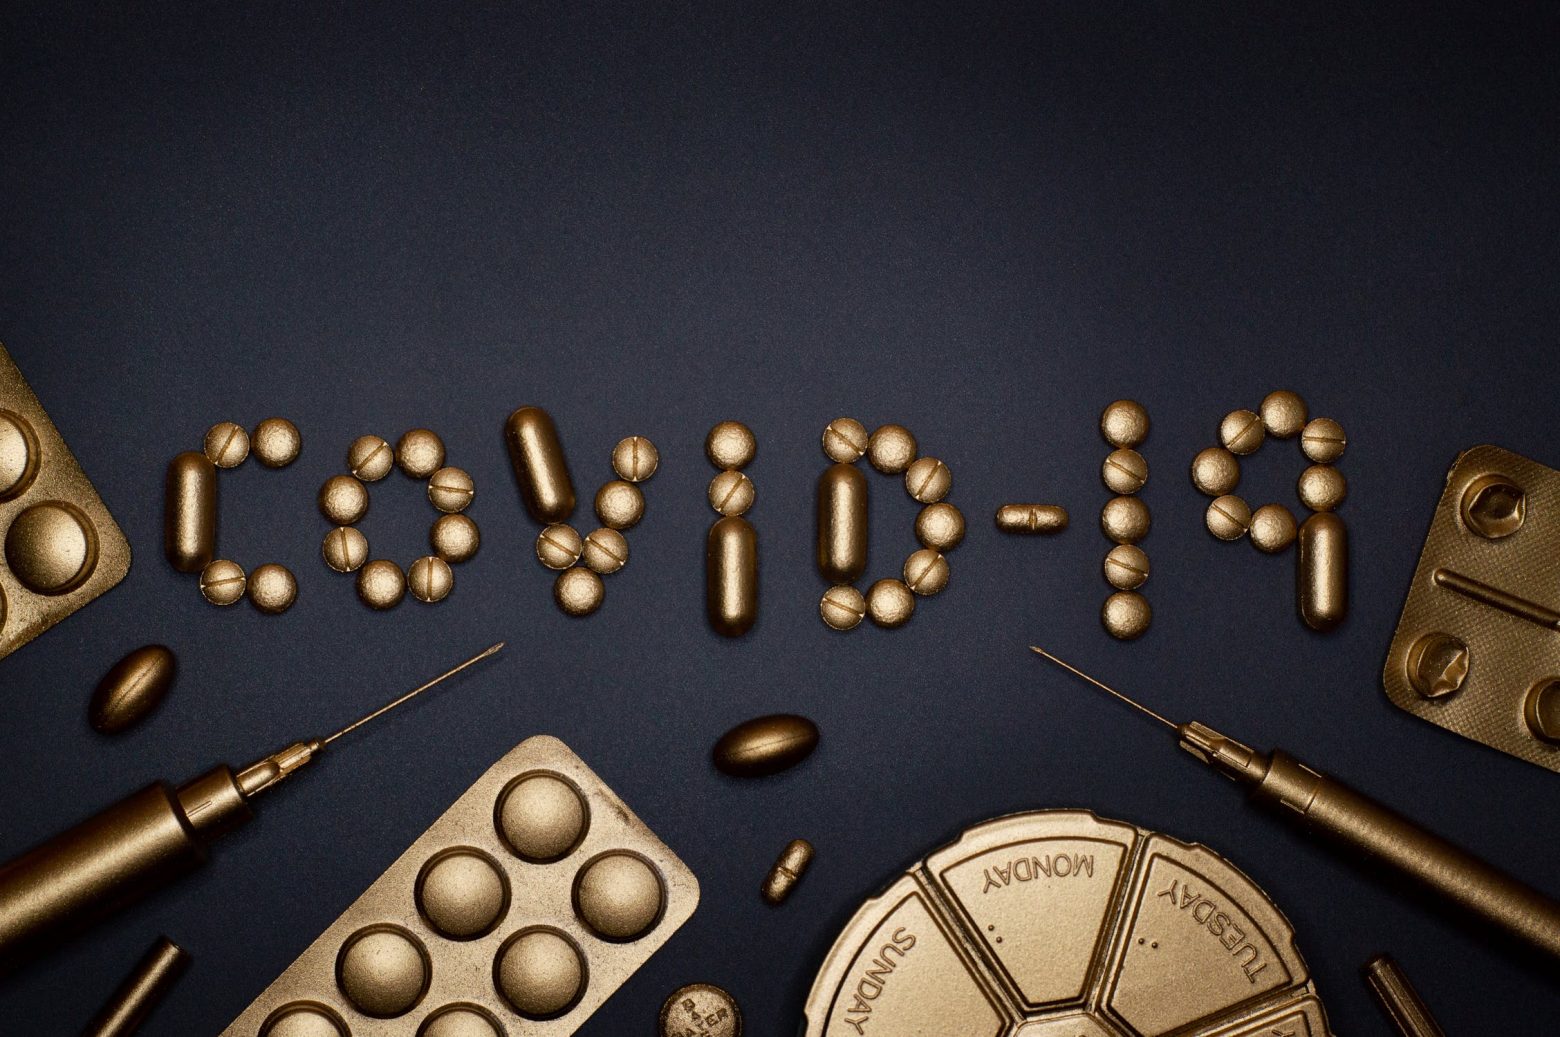 Κοροναϊός - Τα νέα δεδομένα εγείρουν προβληματισμό για το χάπι ενάντια στην Covid-19, μολνουπιραβίρη